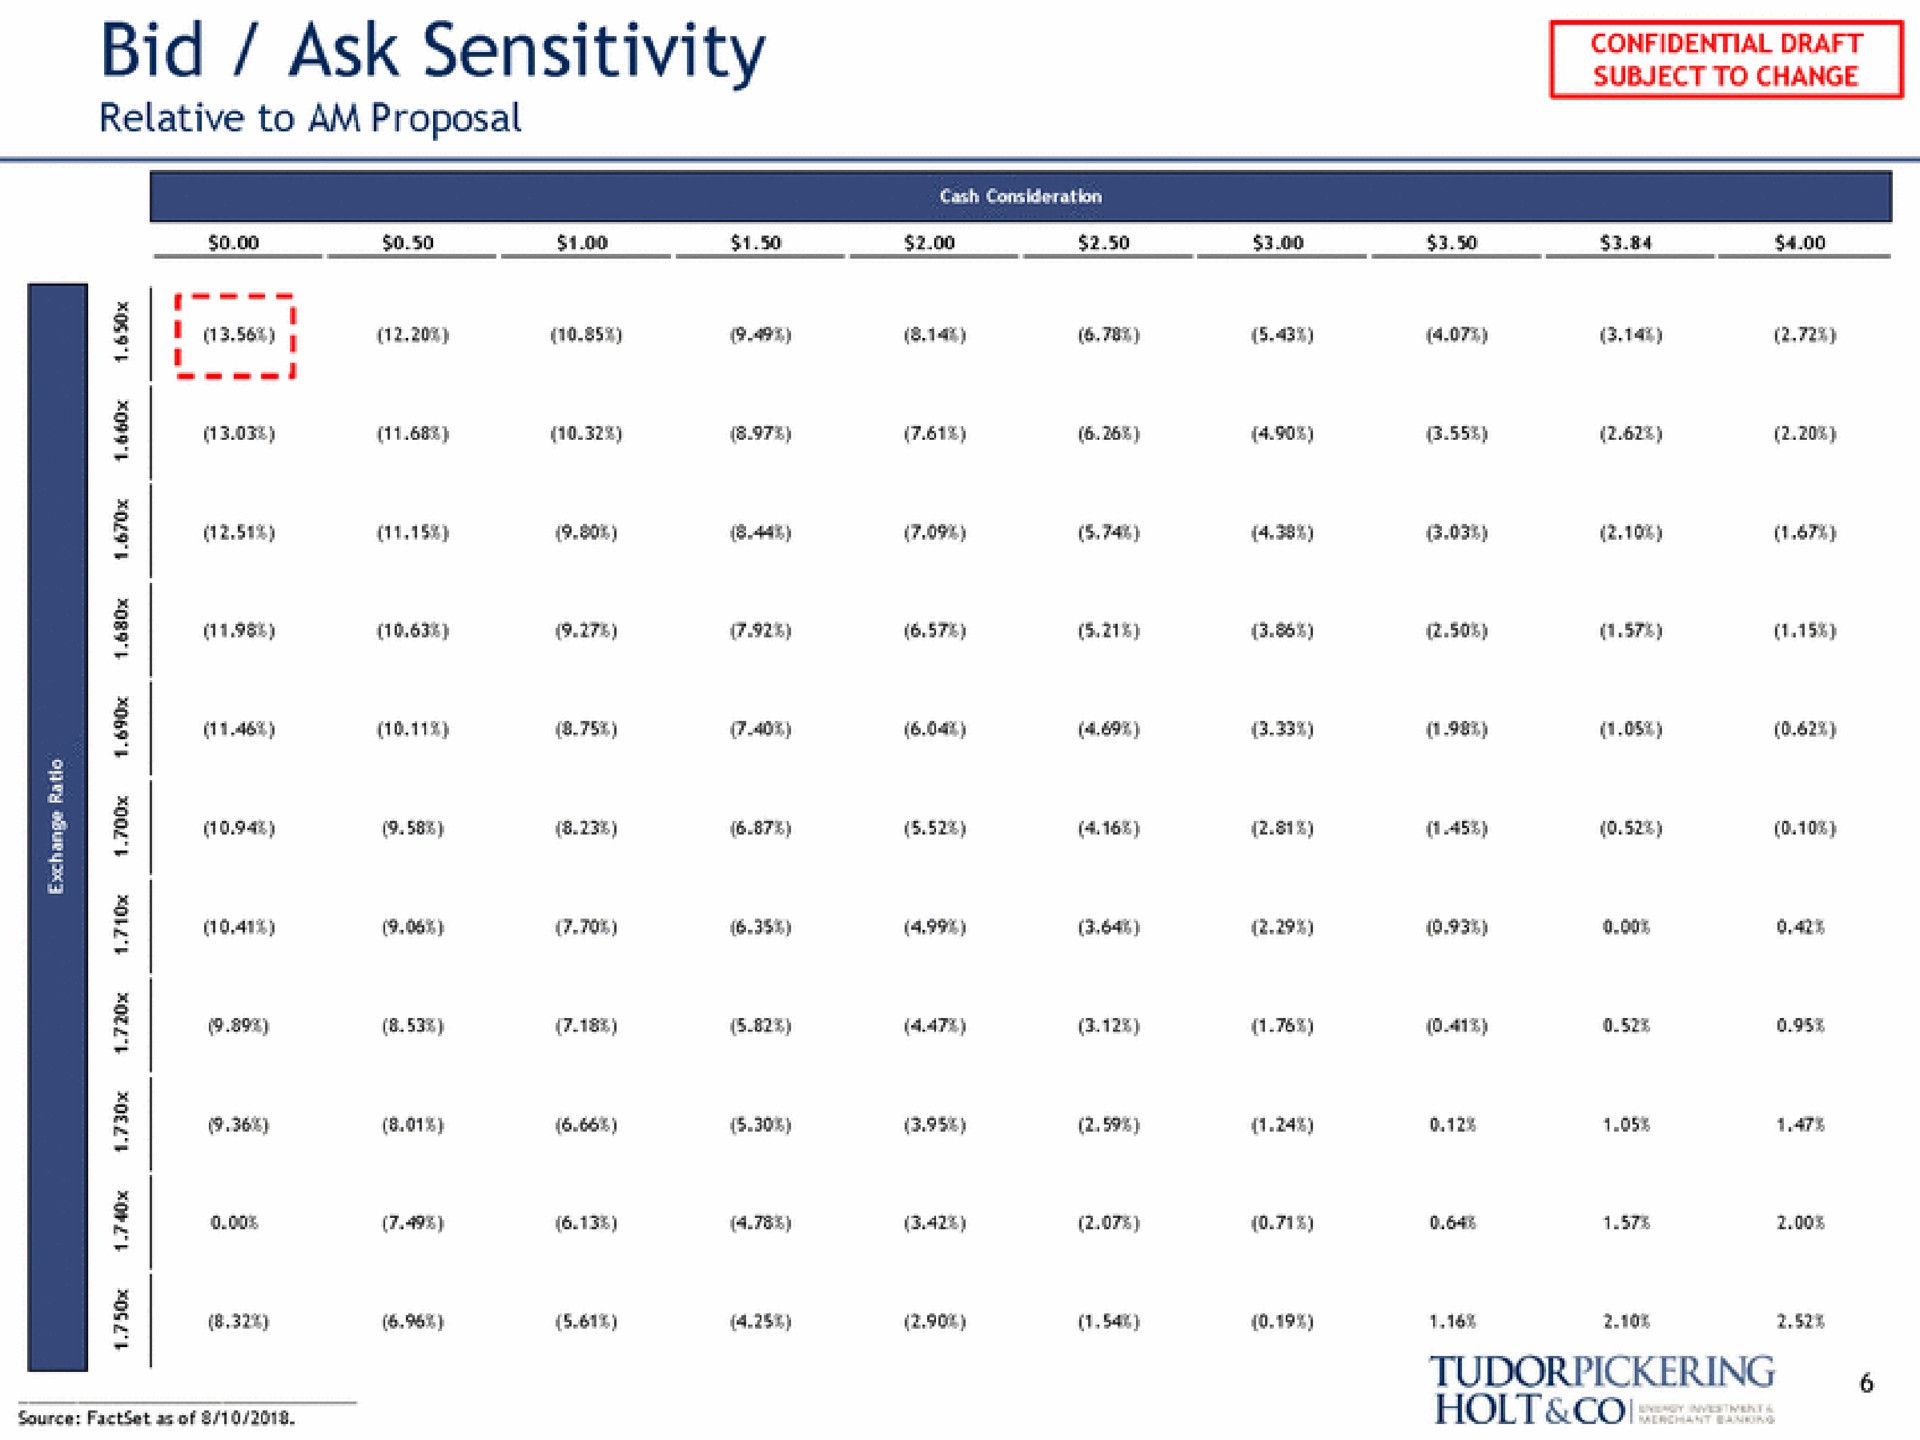 bid ask sensitivity relative to am proposal | Tudor, Pickering, Holt & Co